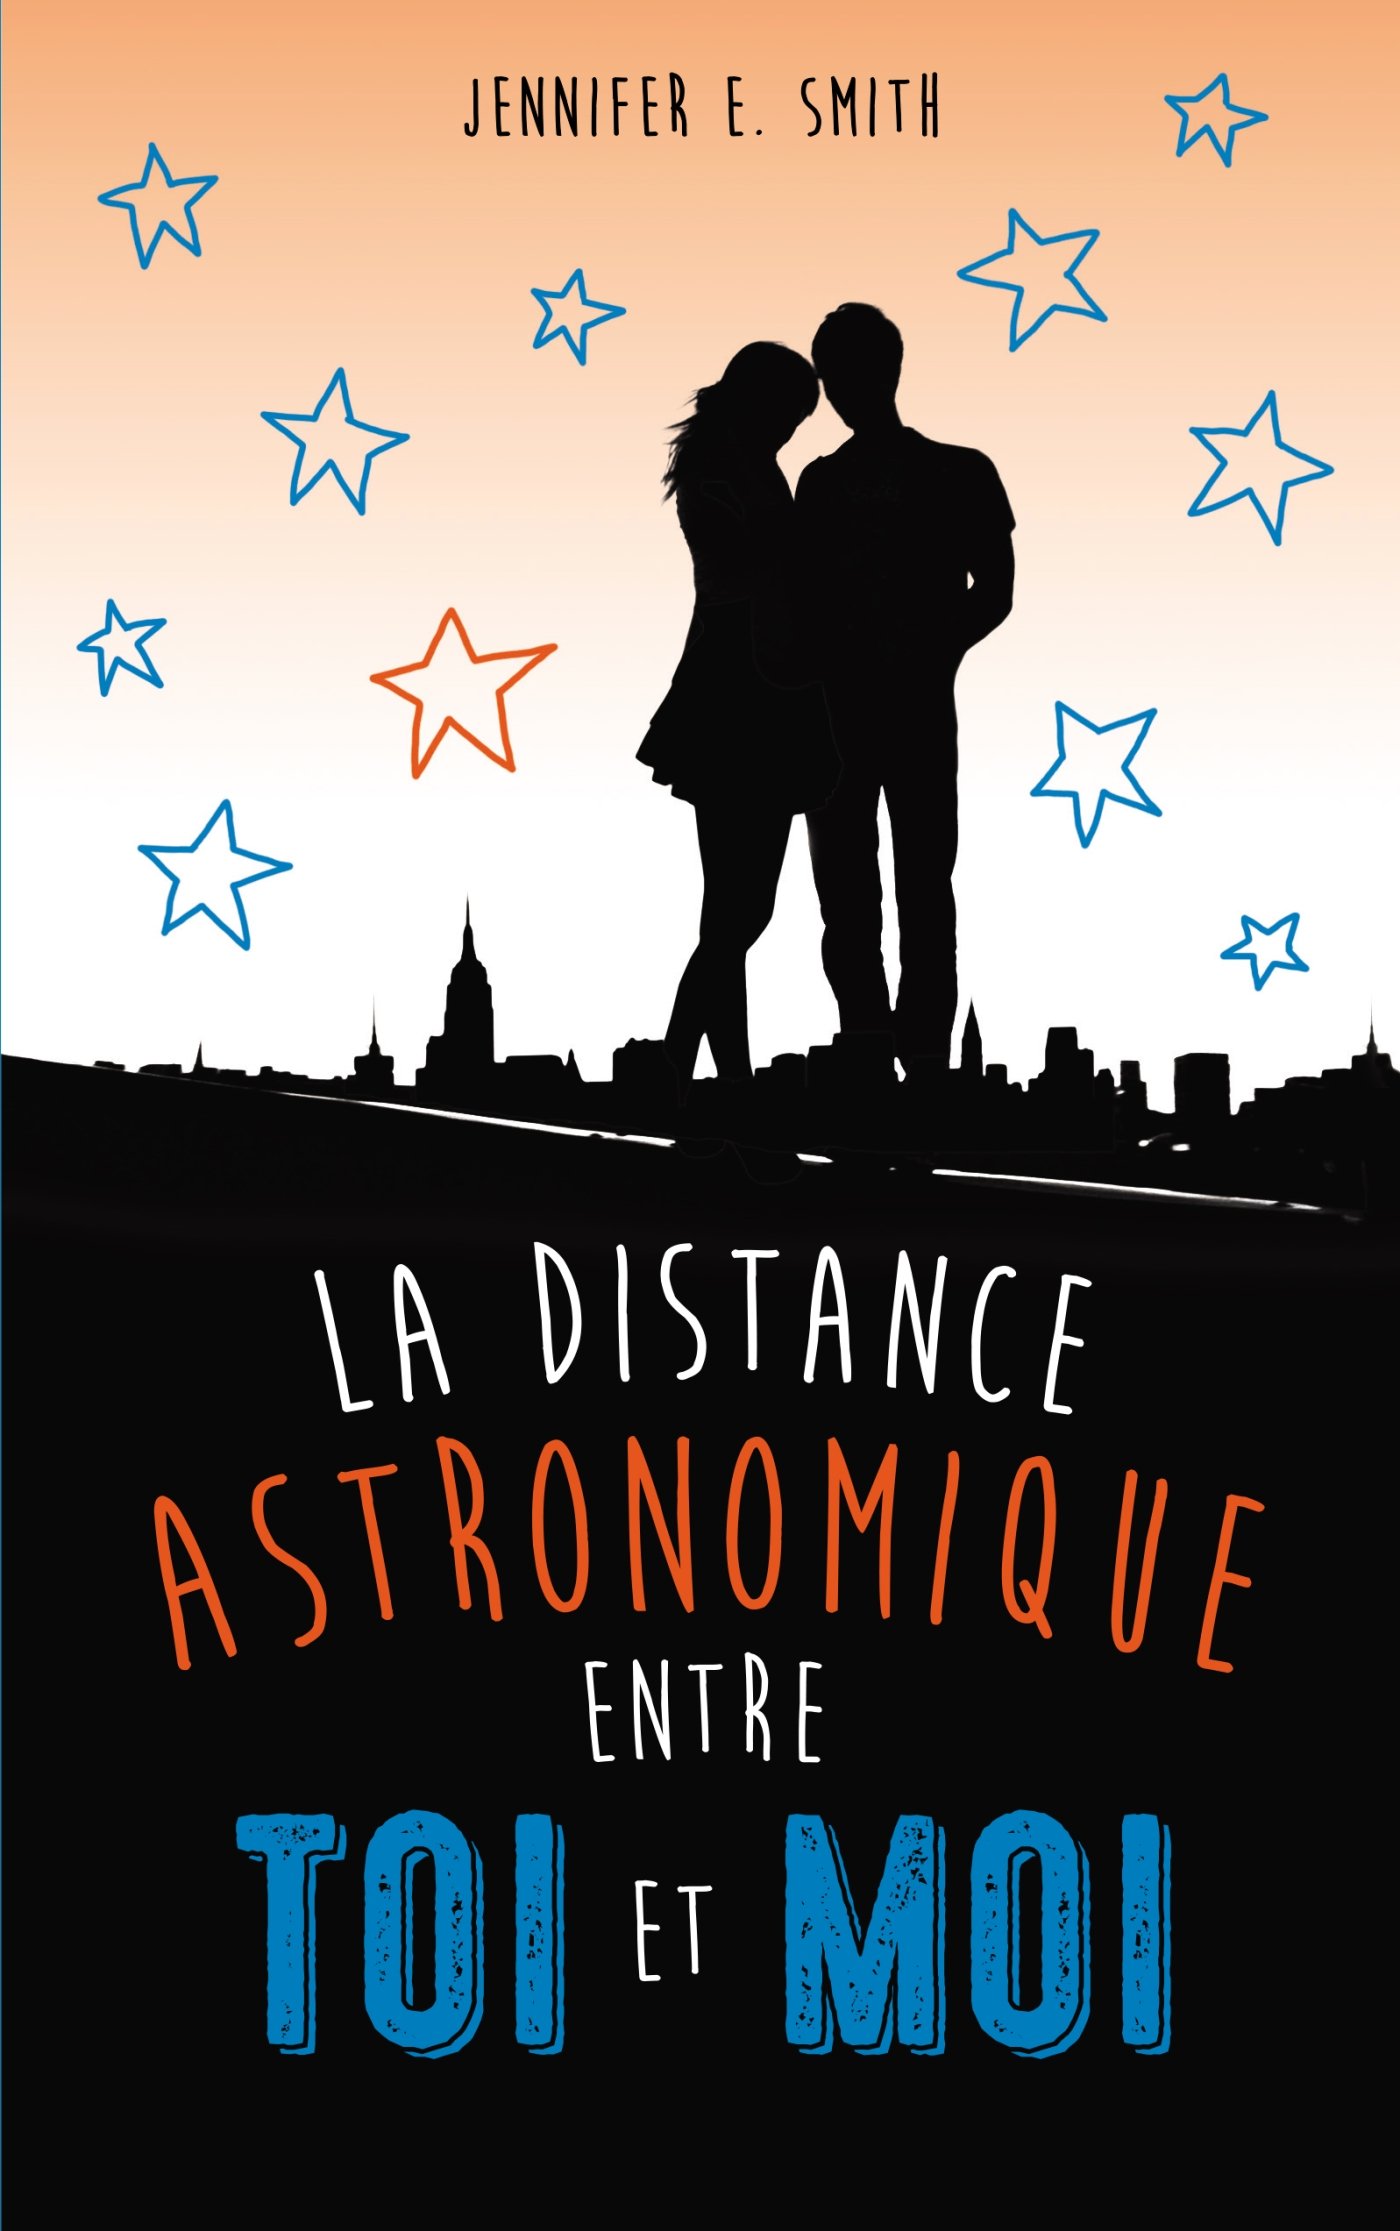 La distance astronomique entre toi et moi